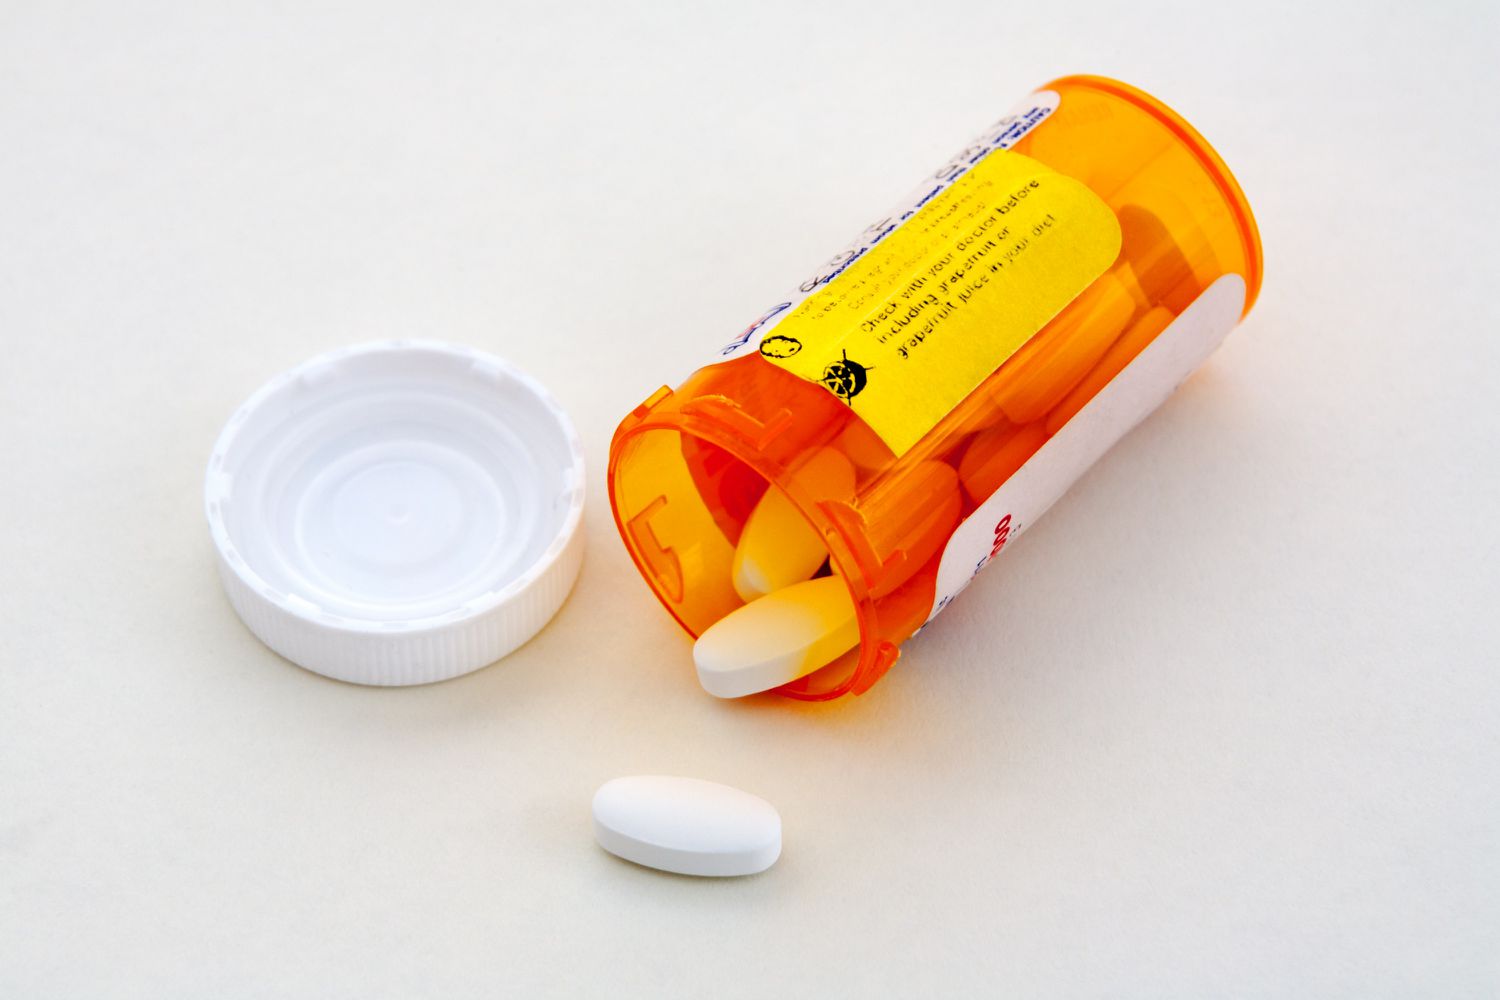 Verschreibungspflichtige Medikamentenflasche offen mit weißen Pillen, die herausquellen